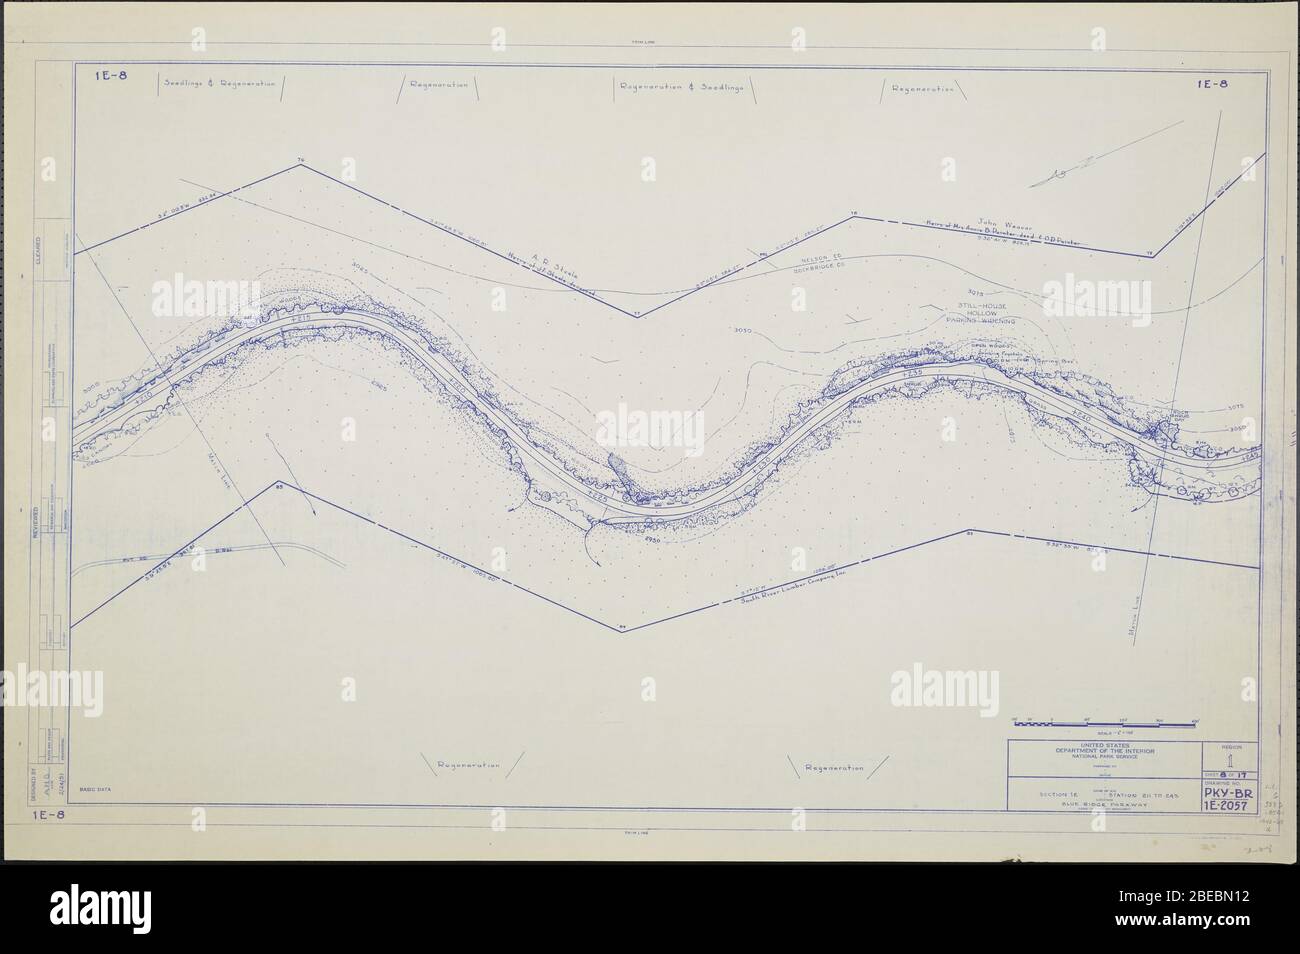 'Blue Ridge Parkway, Region 1 Blatt 8; EINE Karte des Blue Ridge Parkway mit Details über die nahe gelegenen Bäume, Sträucher und Sämlinge. Zeichnung Nr. 1E-8. Skala 1=100.; Februar 1951 Datum QS:P571,+1951-02-00T00:00:00Z/10; ' Stockfoto